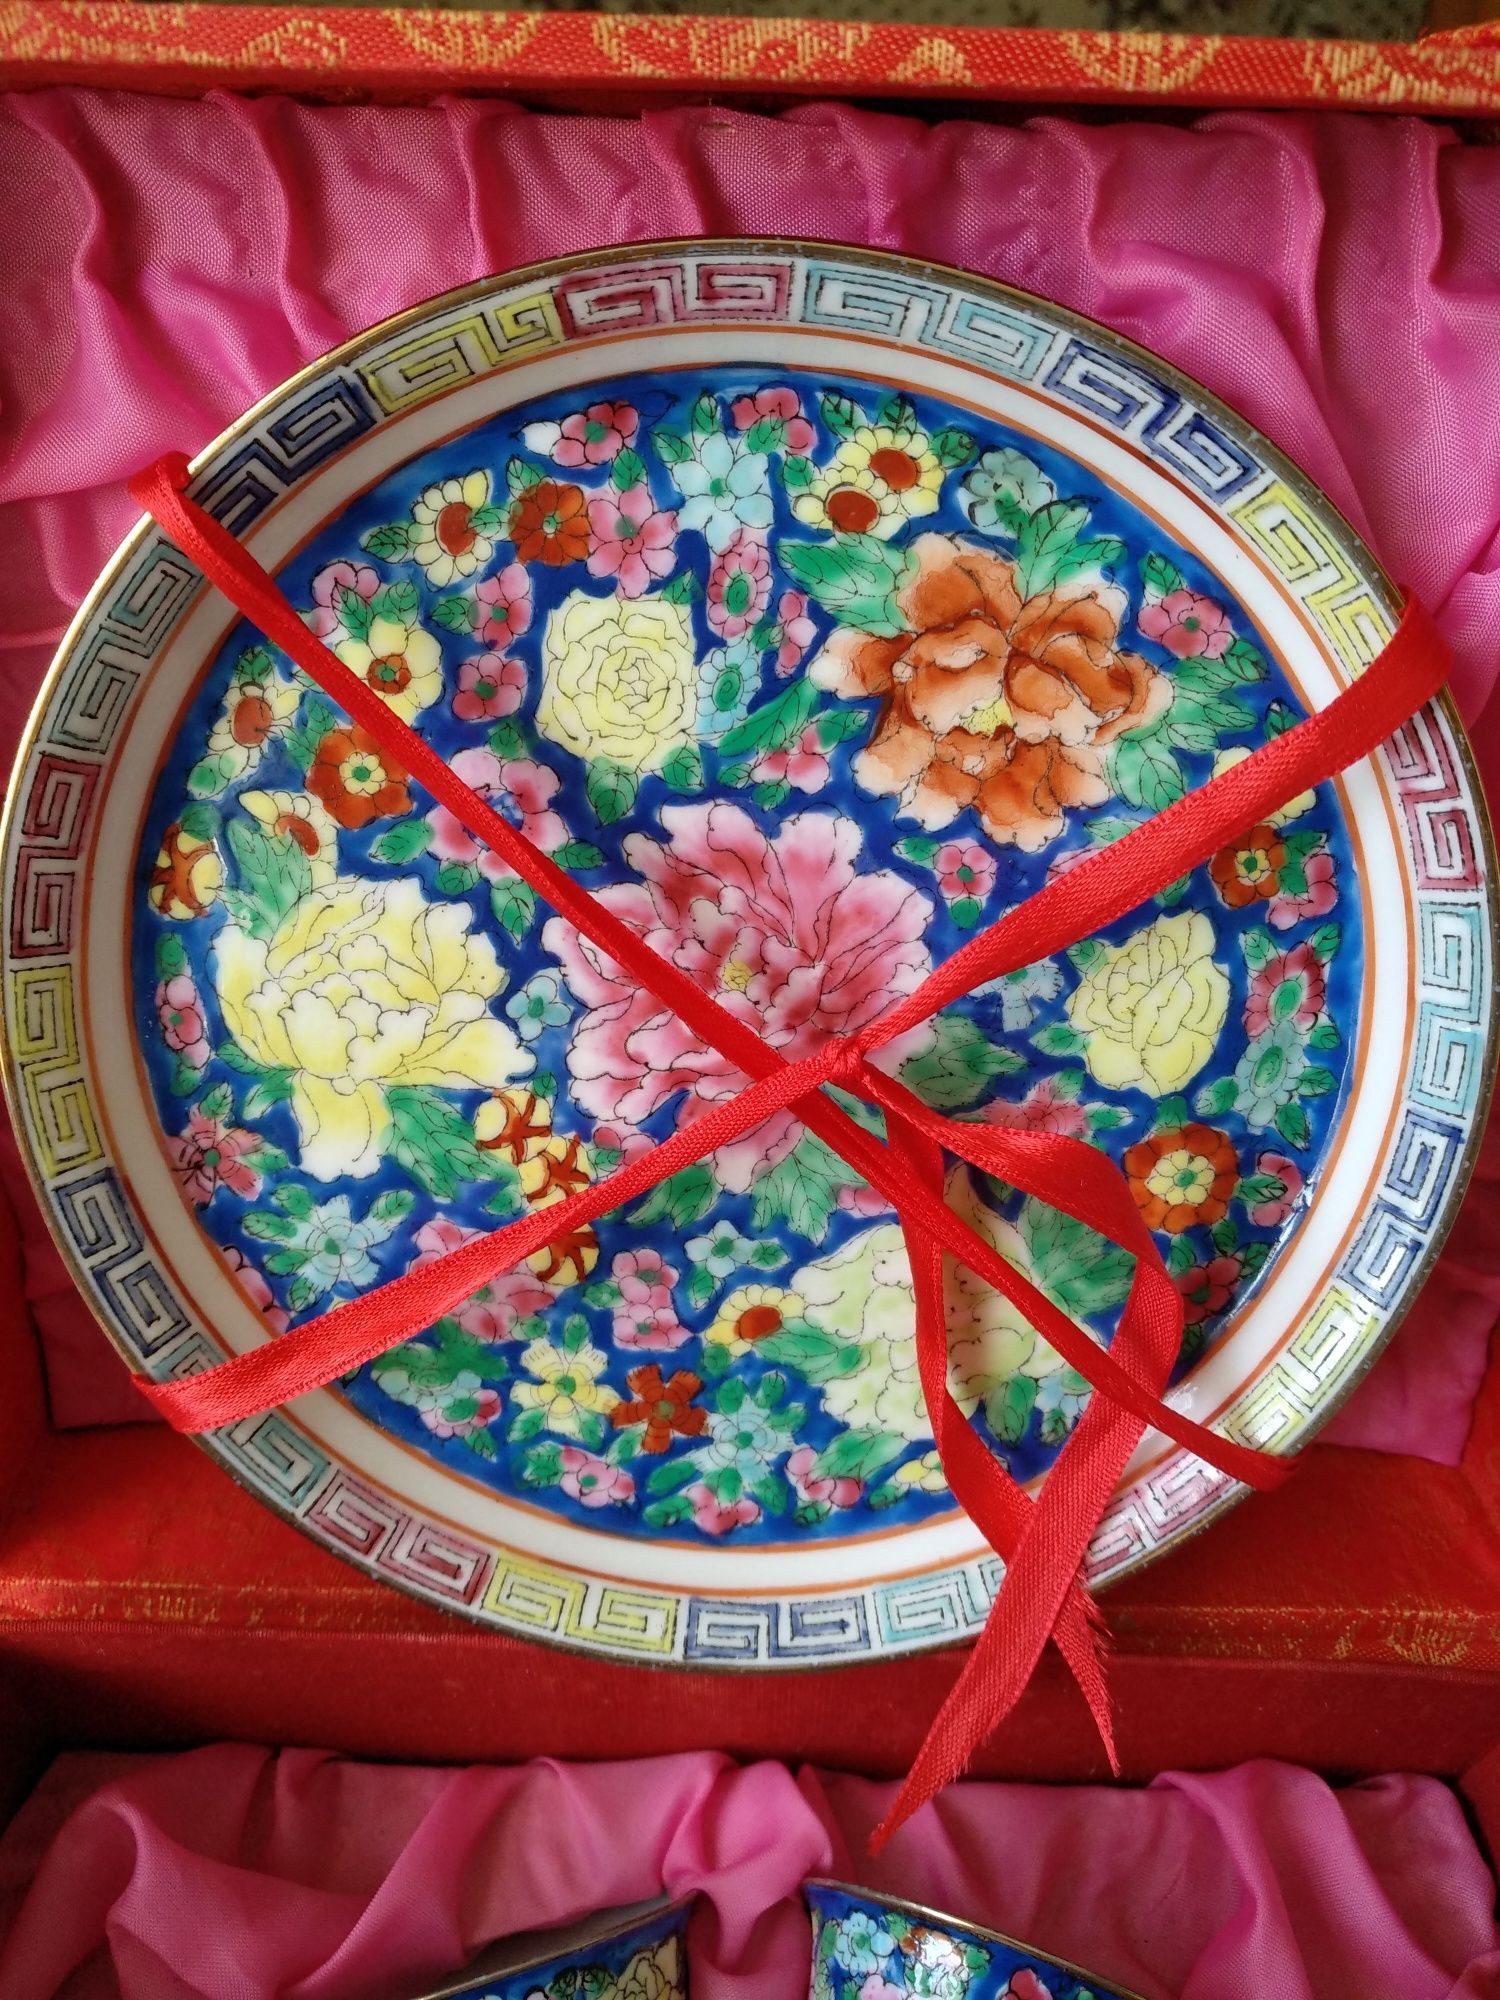 Фарфор антикварный китайский сервиз яичная скорлупа ручная роспись